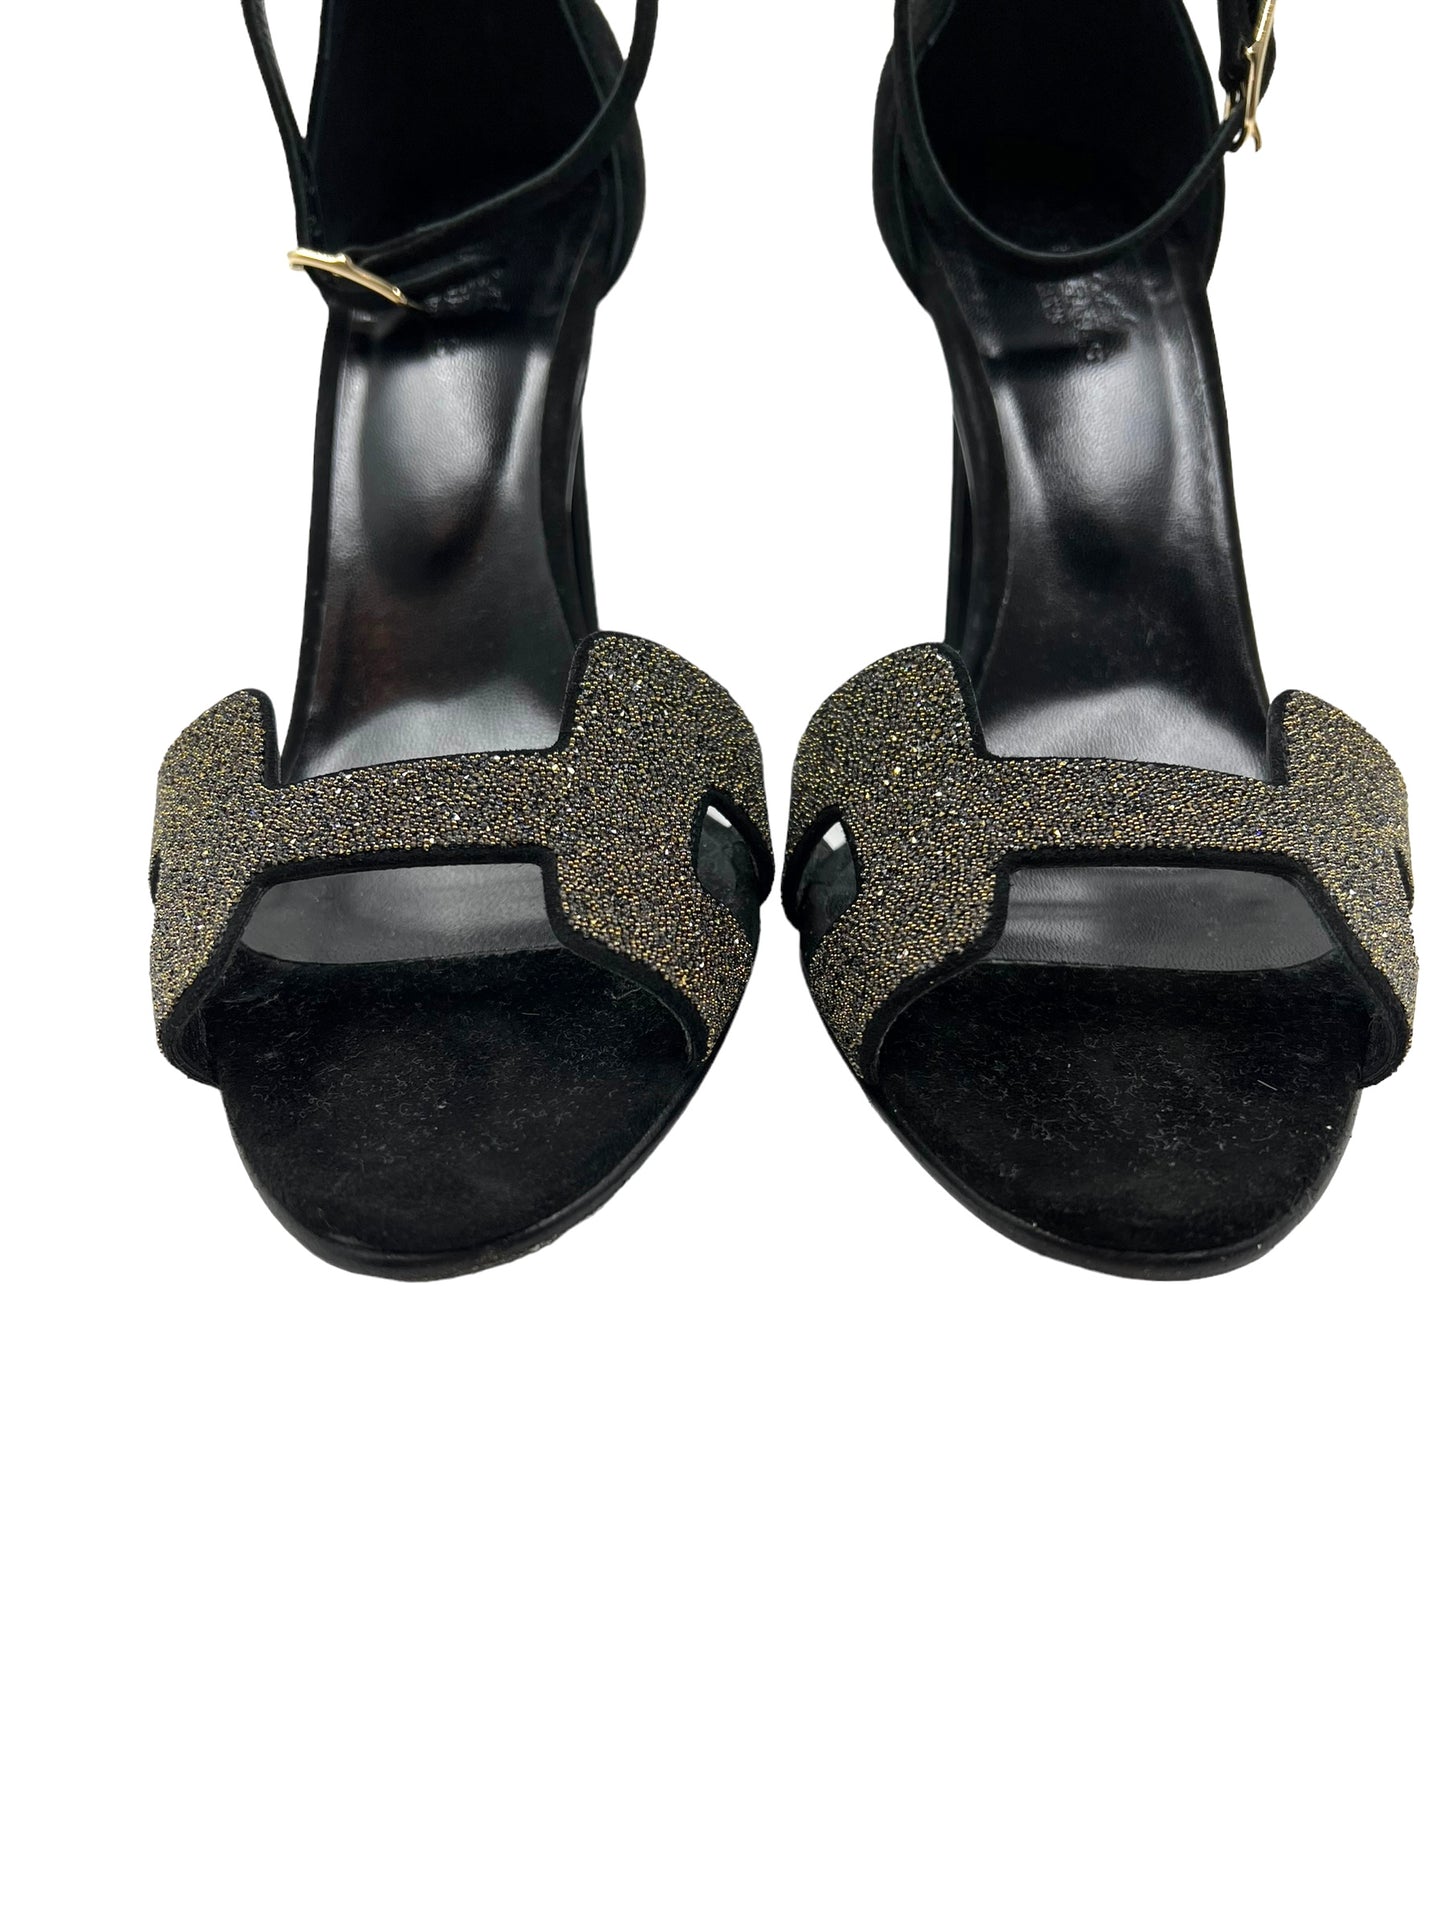 Hermes Size 39.5 Black Crystal Embellished Premiere 105 Heels